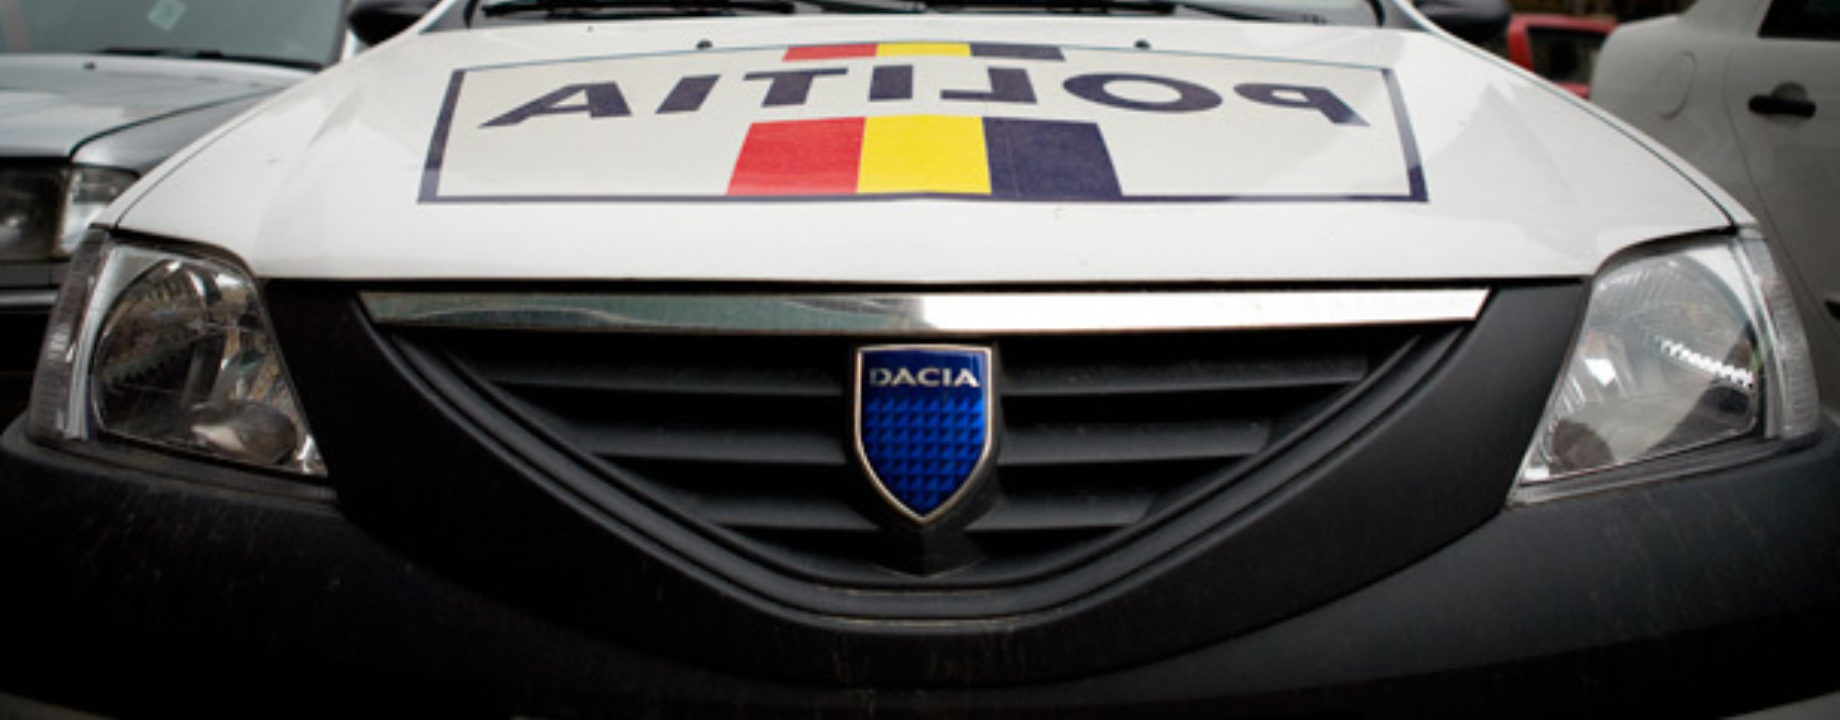 Romania police car dacia